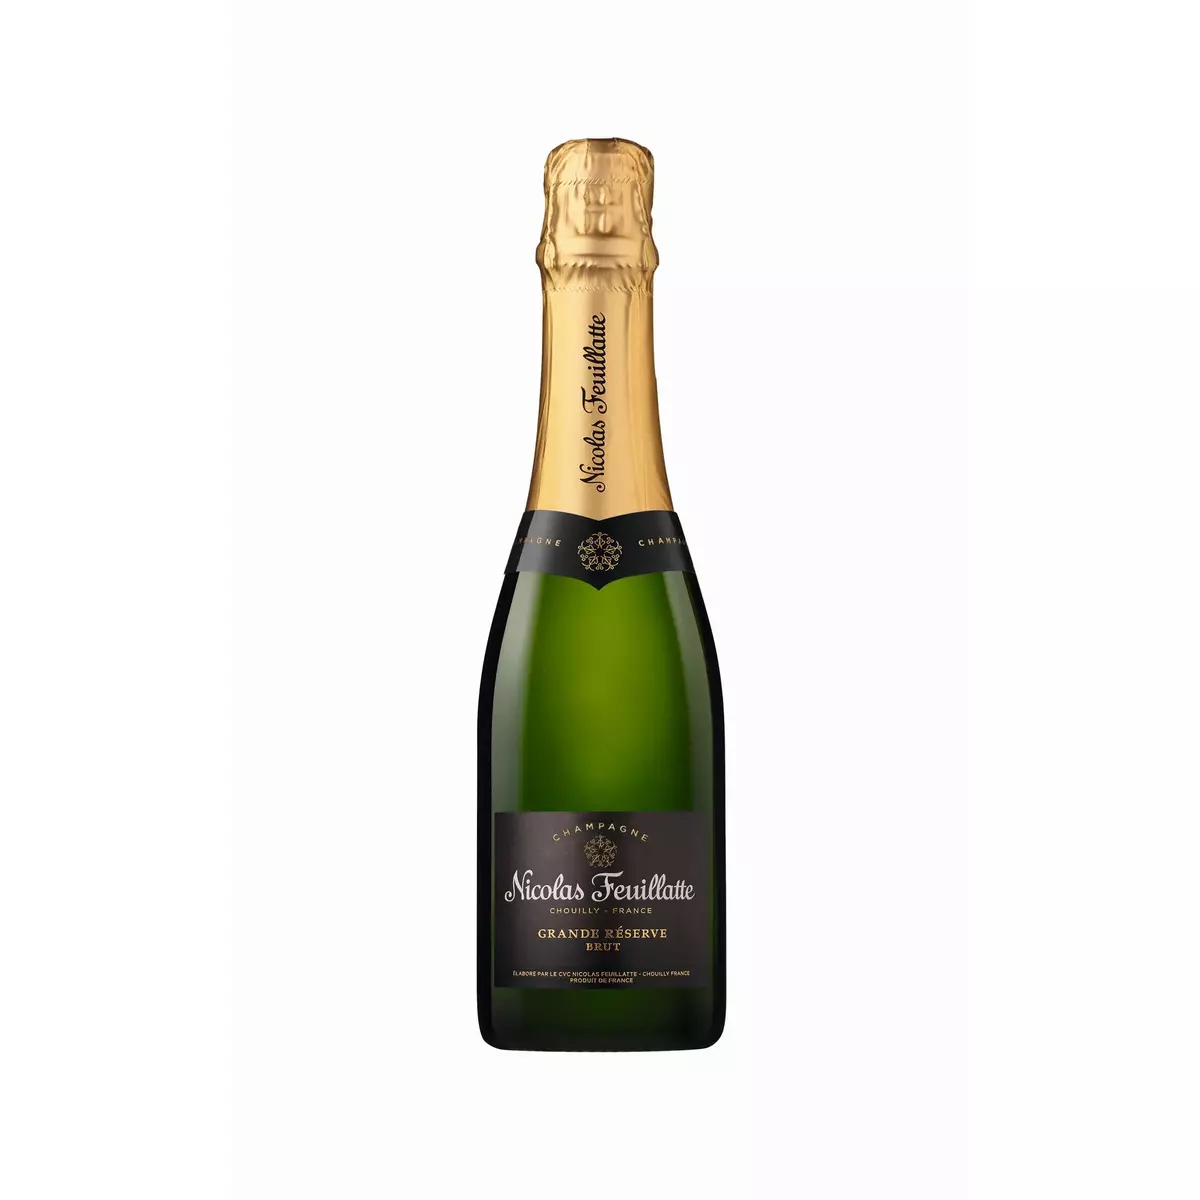 NICOLAS FEUILLATTE AOP Champagne Chouilly Grande Réserve brut 37,5cl